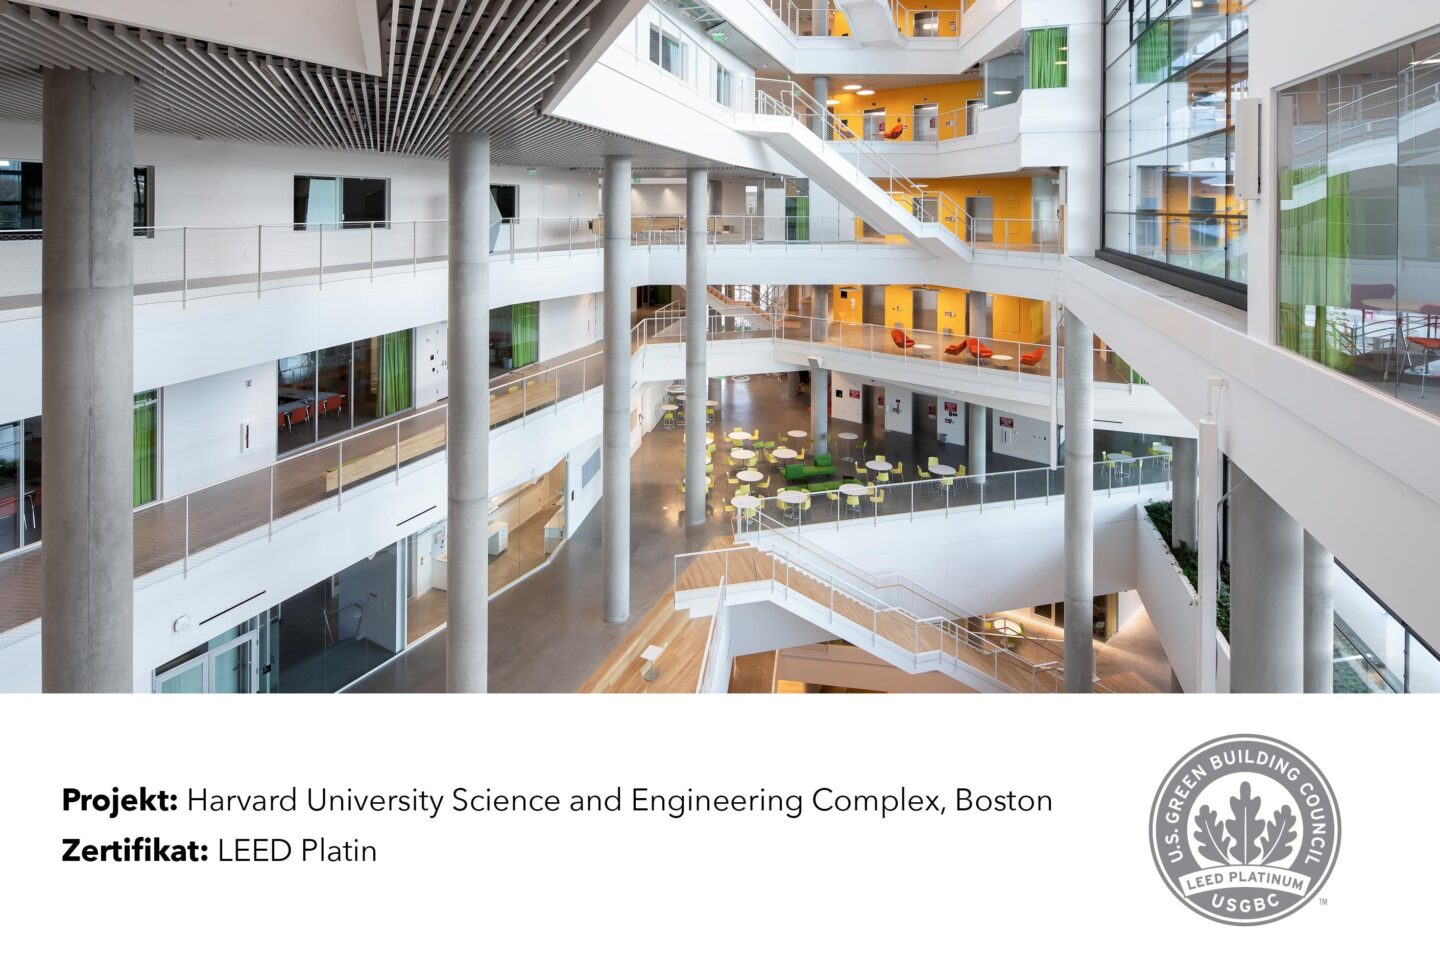 Nachhaltigkeit bei feco │ nachhaltige Zertifizierung LEEDS Platinum │ feco-Trennwände in Harvard, Boston